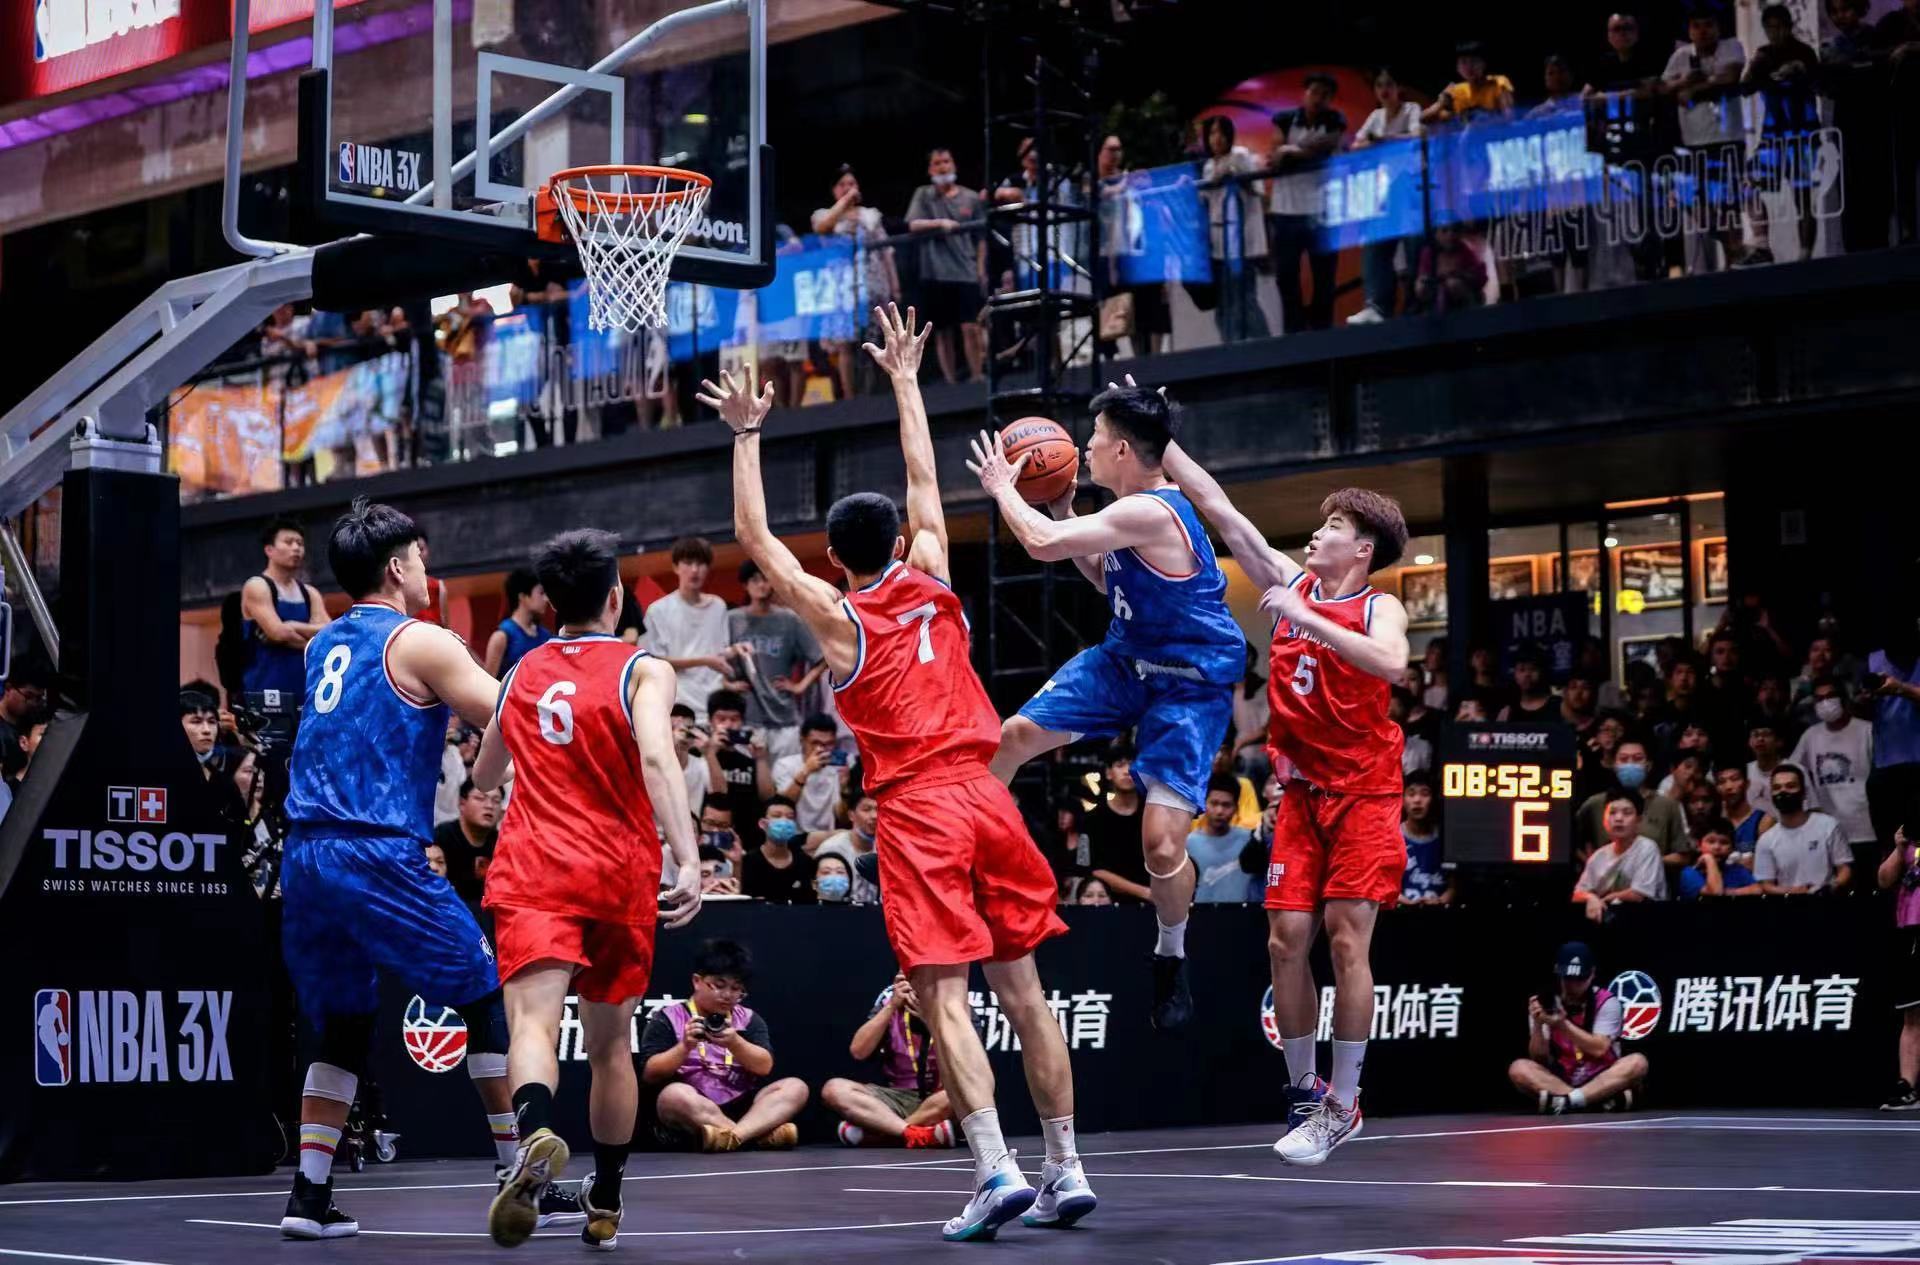 NBA中国希望把比赛变成贯穿数月且全国全民参与的篮球狂欢，让更多朋友感受篮球的魅力。